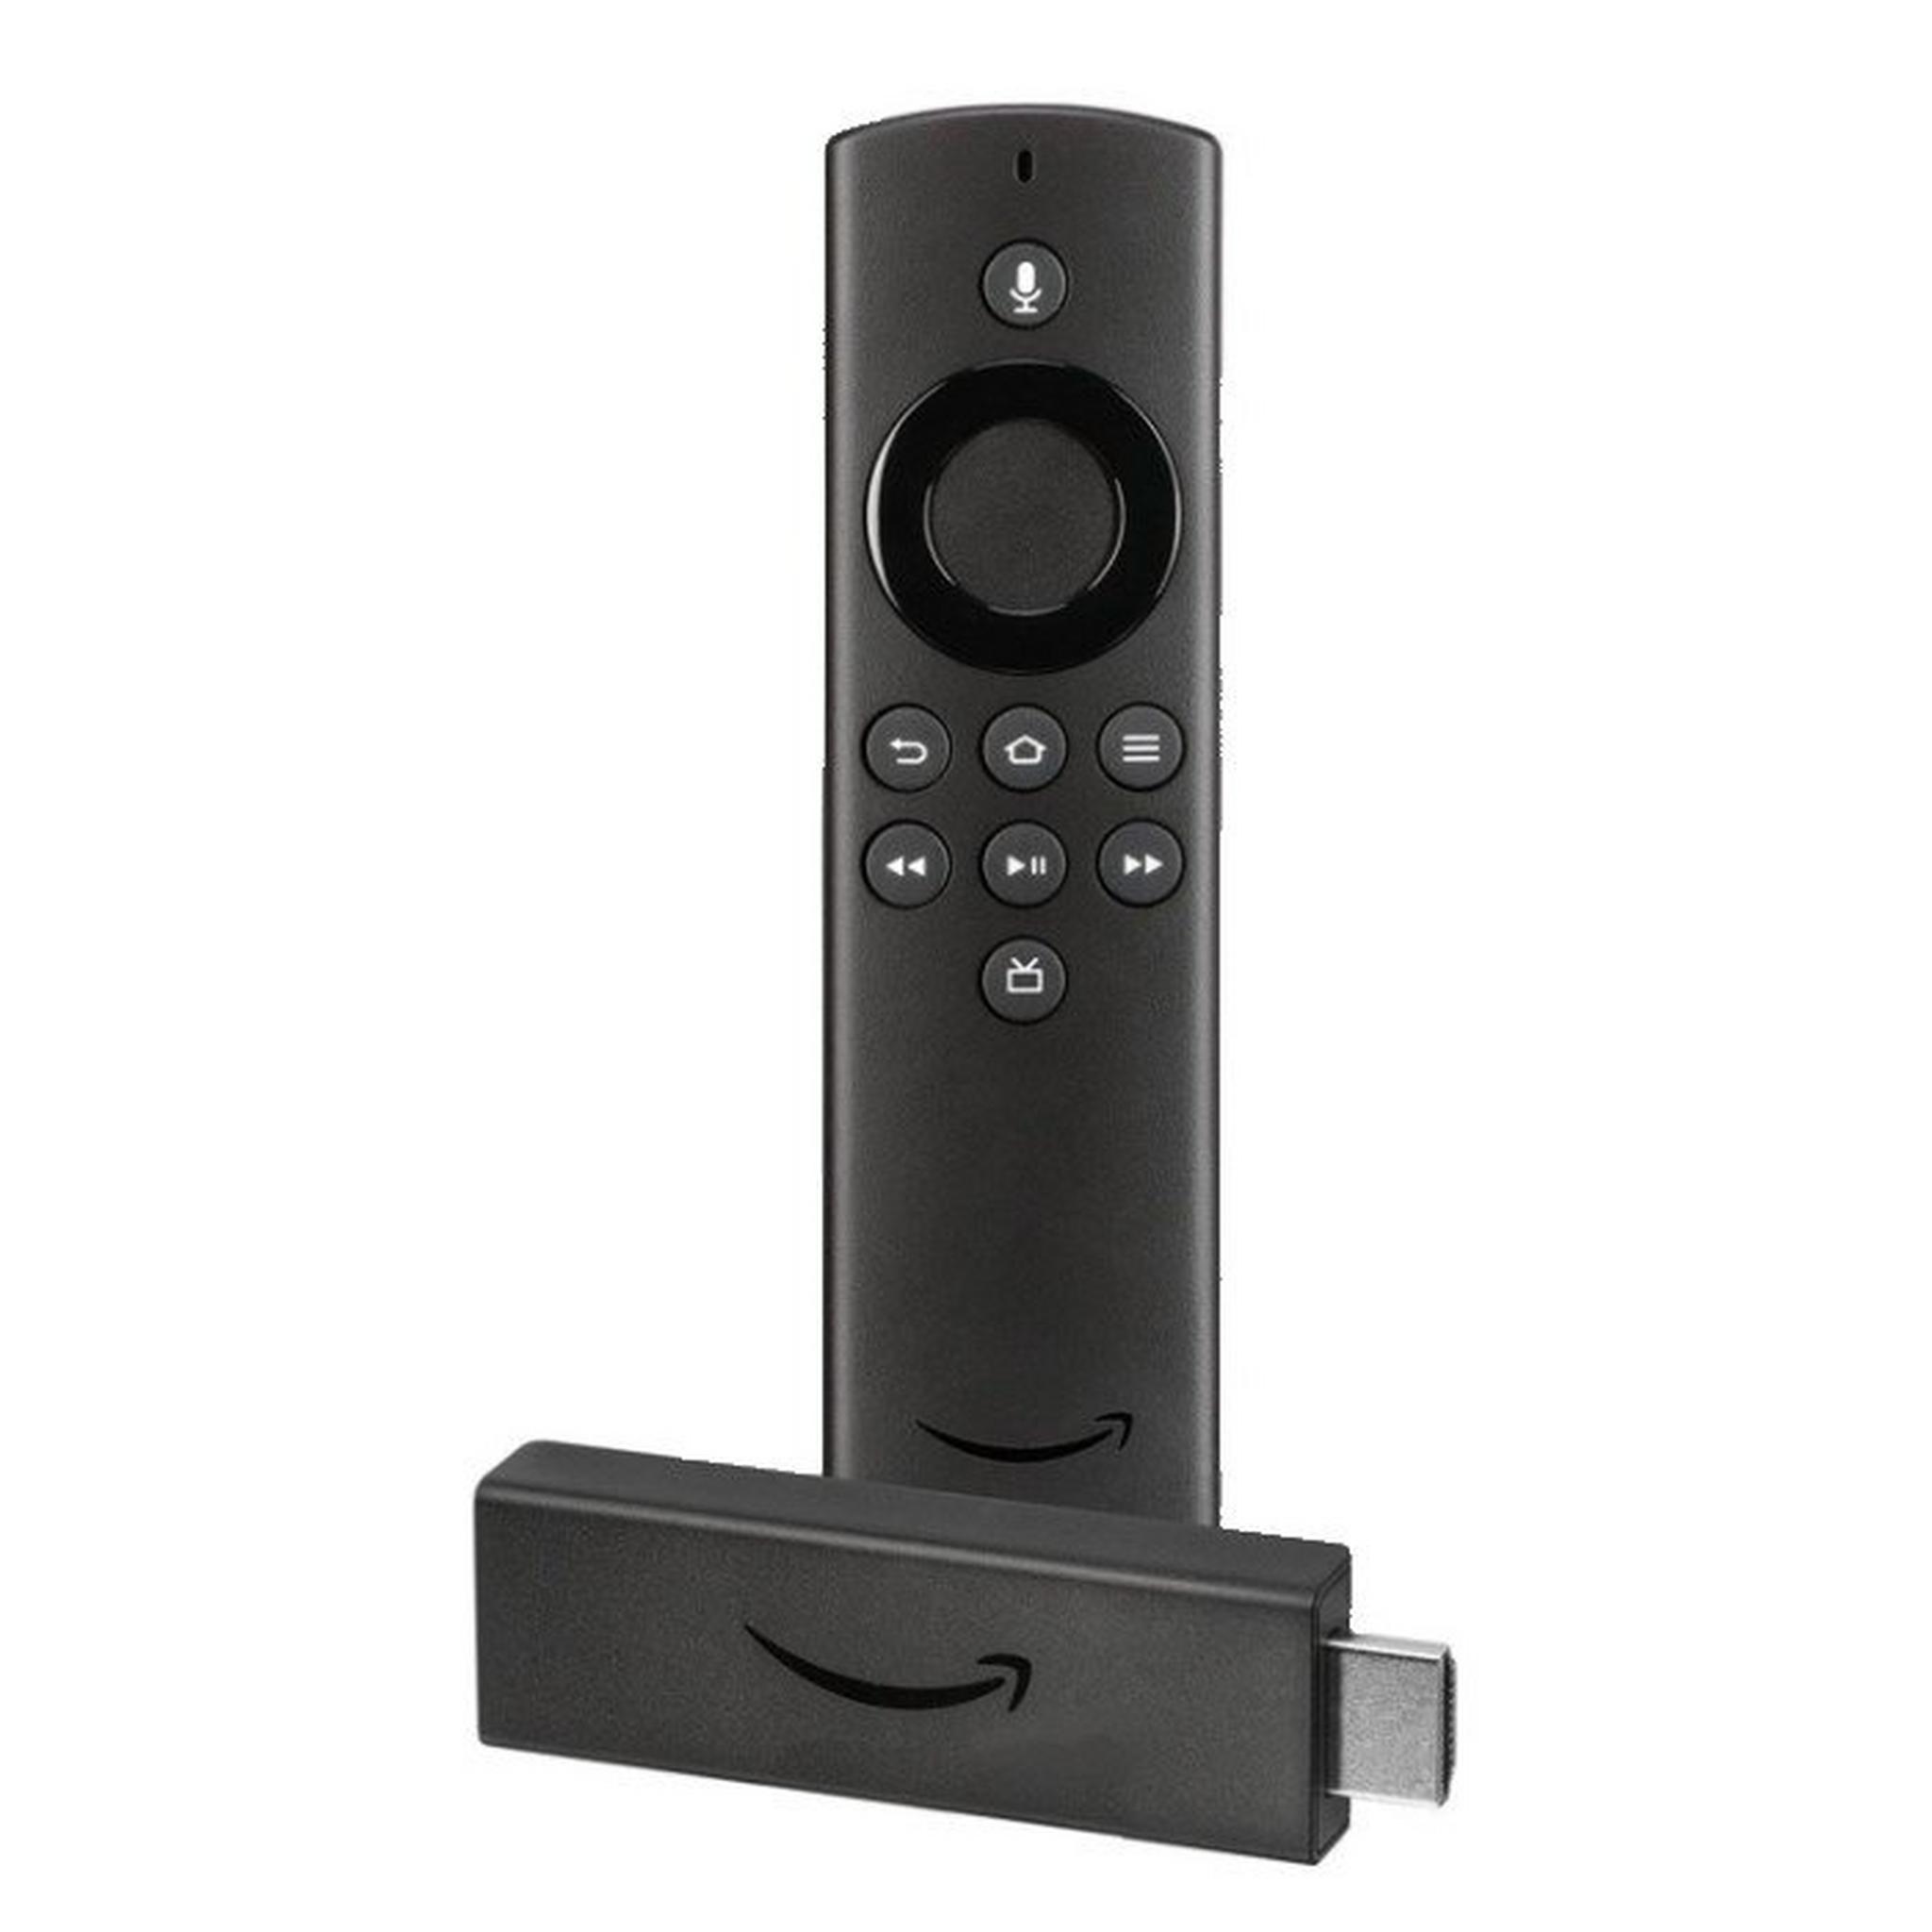 Amazon Fire TV Stick Lite with Alexa Voice Remote, G071CQ0910140FJ9 – Black